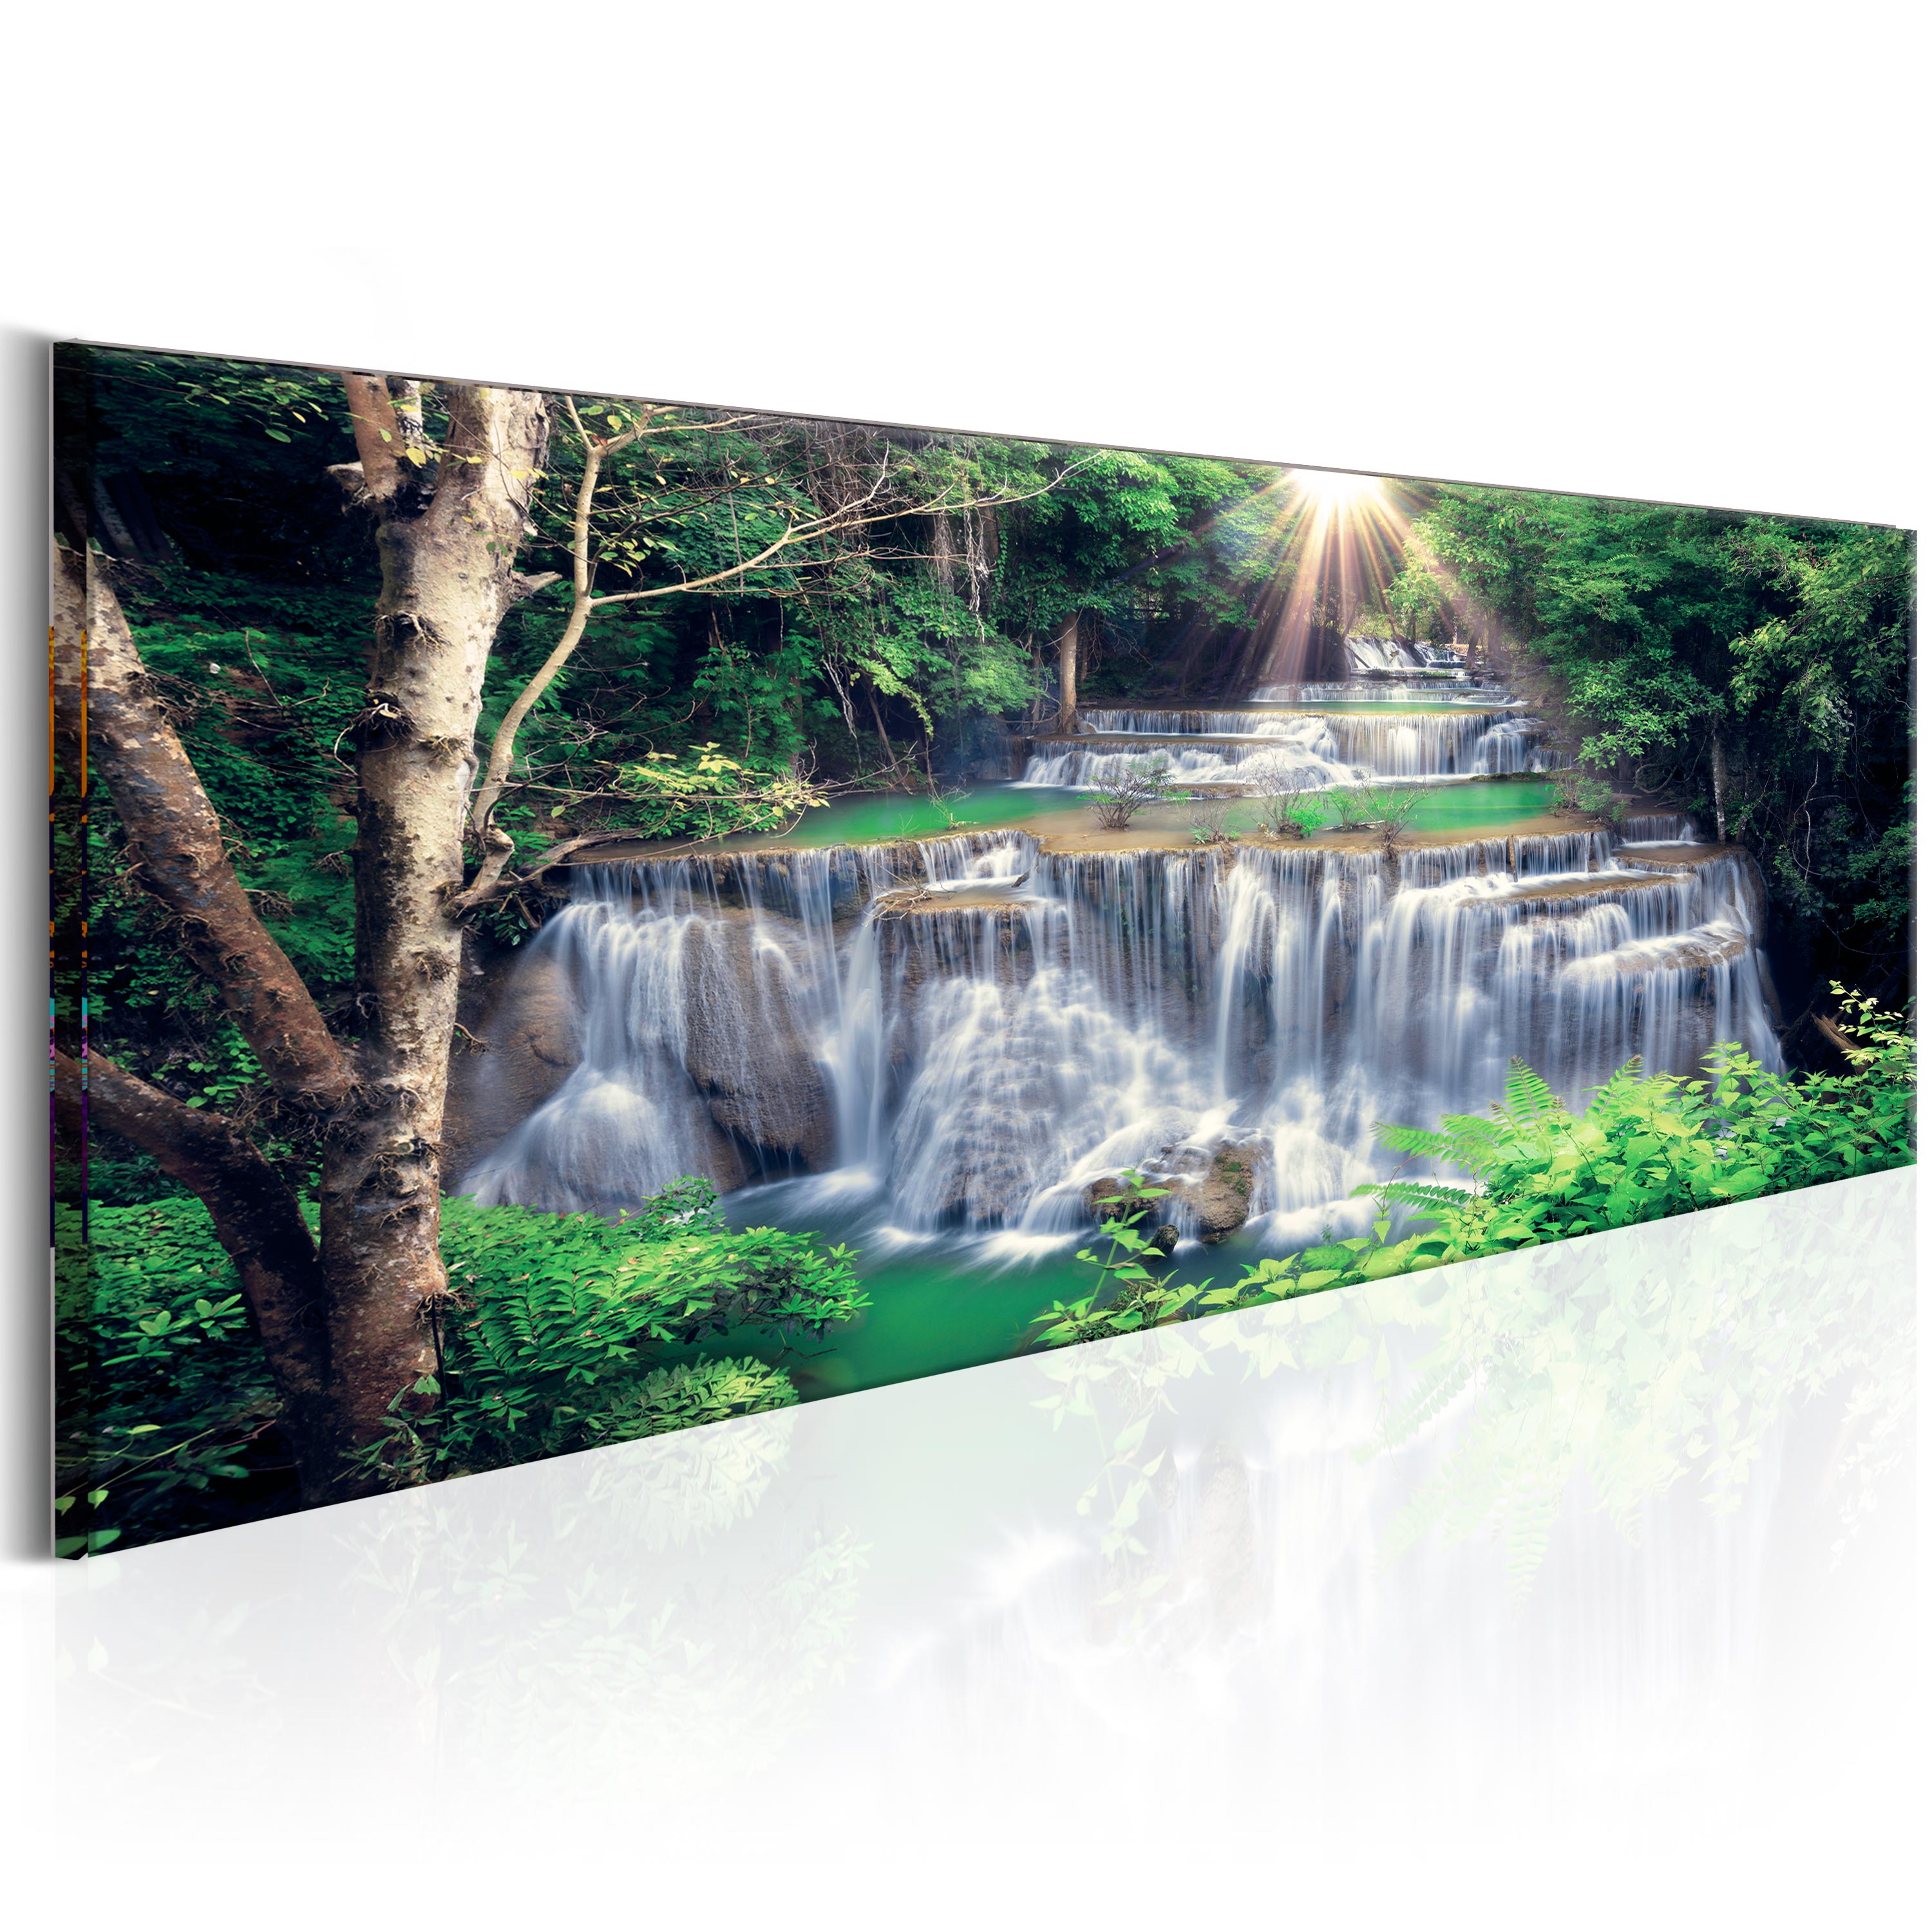 Waterfall 1p Bild auf auf Leinwand Wandbild Poster Kunstdruck Natur Bilder 